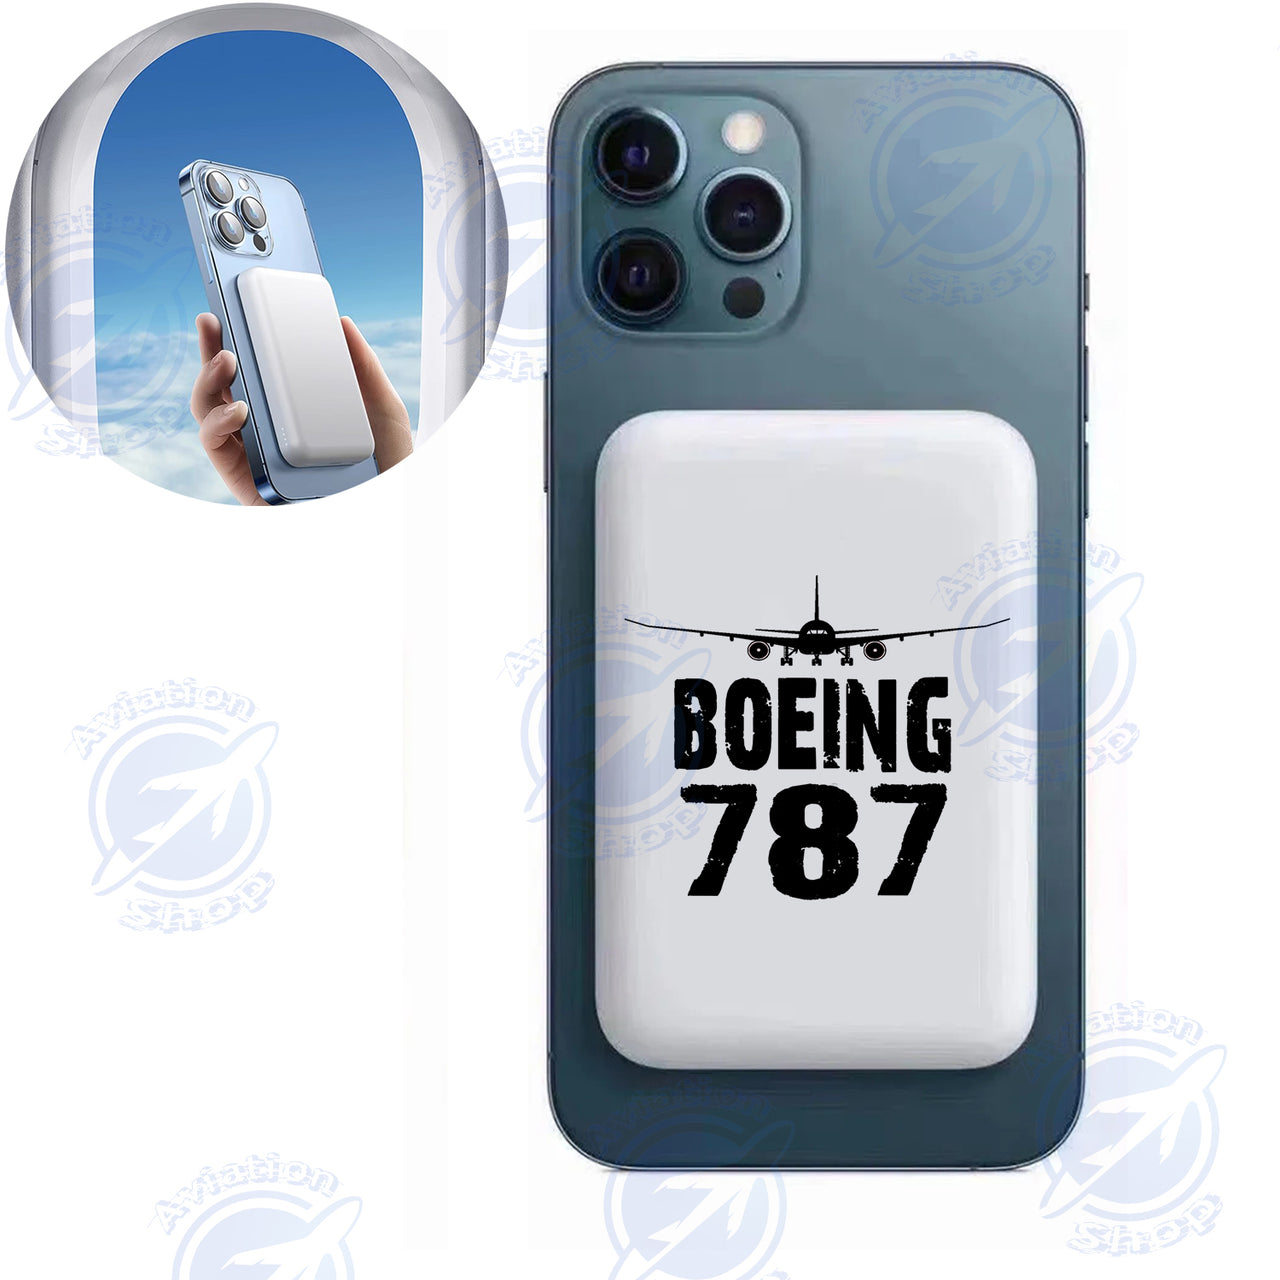 Boeing 787 & Plane Designed MagSafe PowerBanks